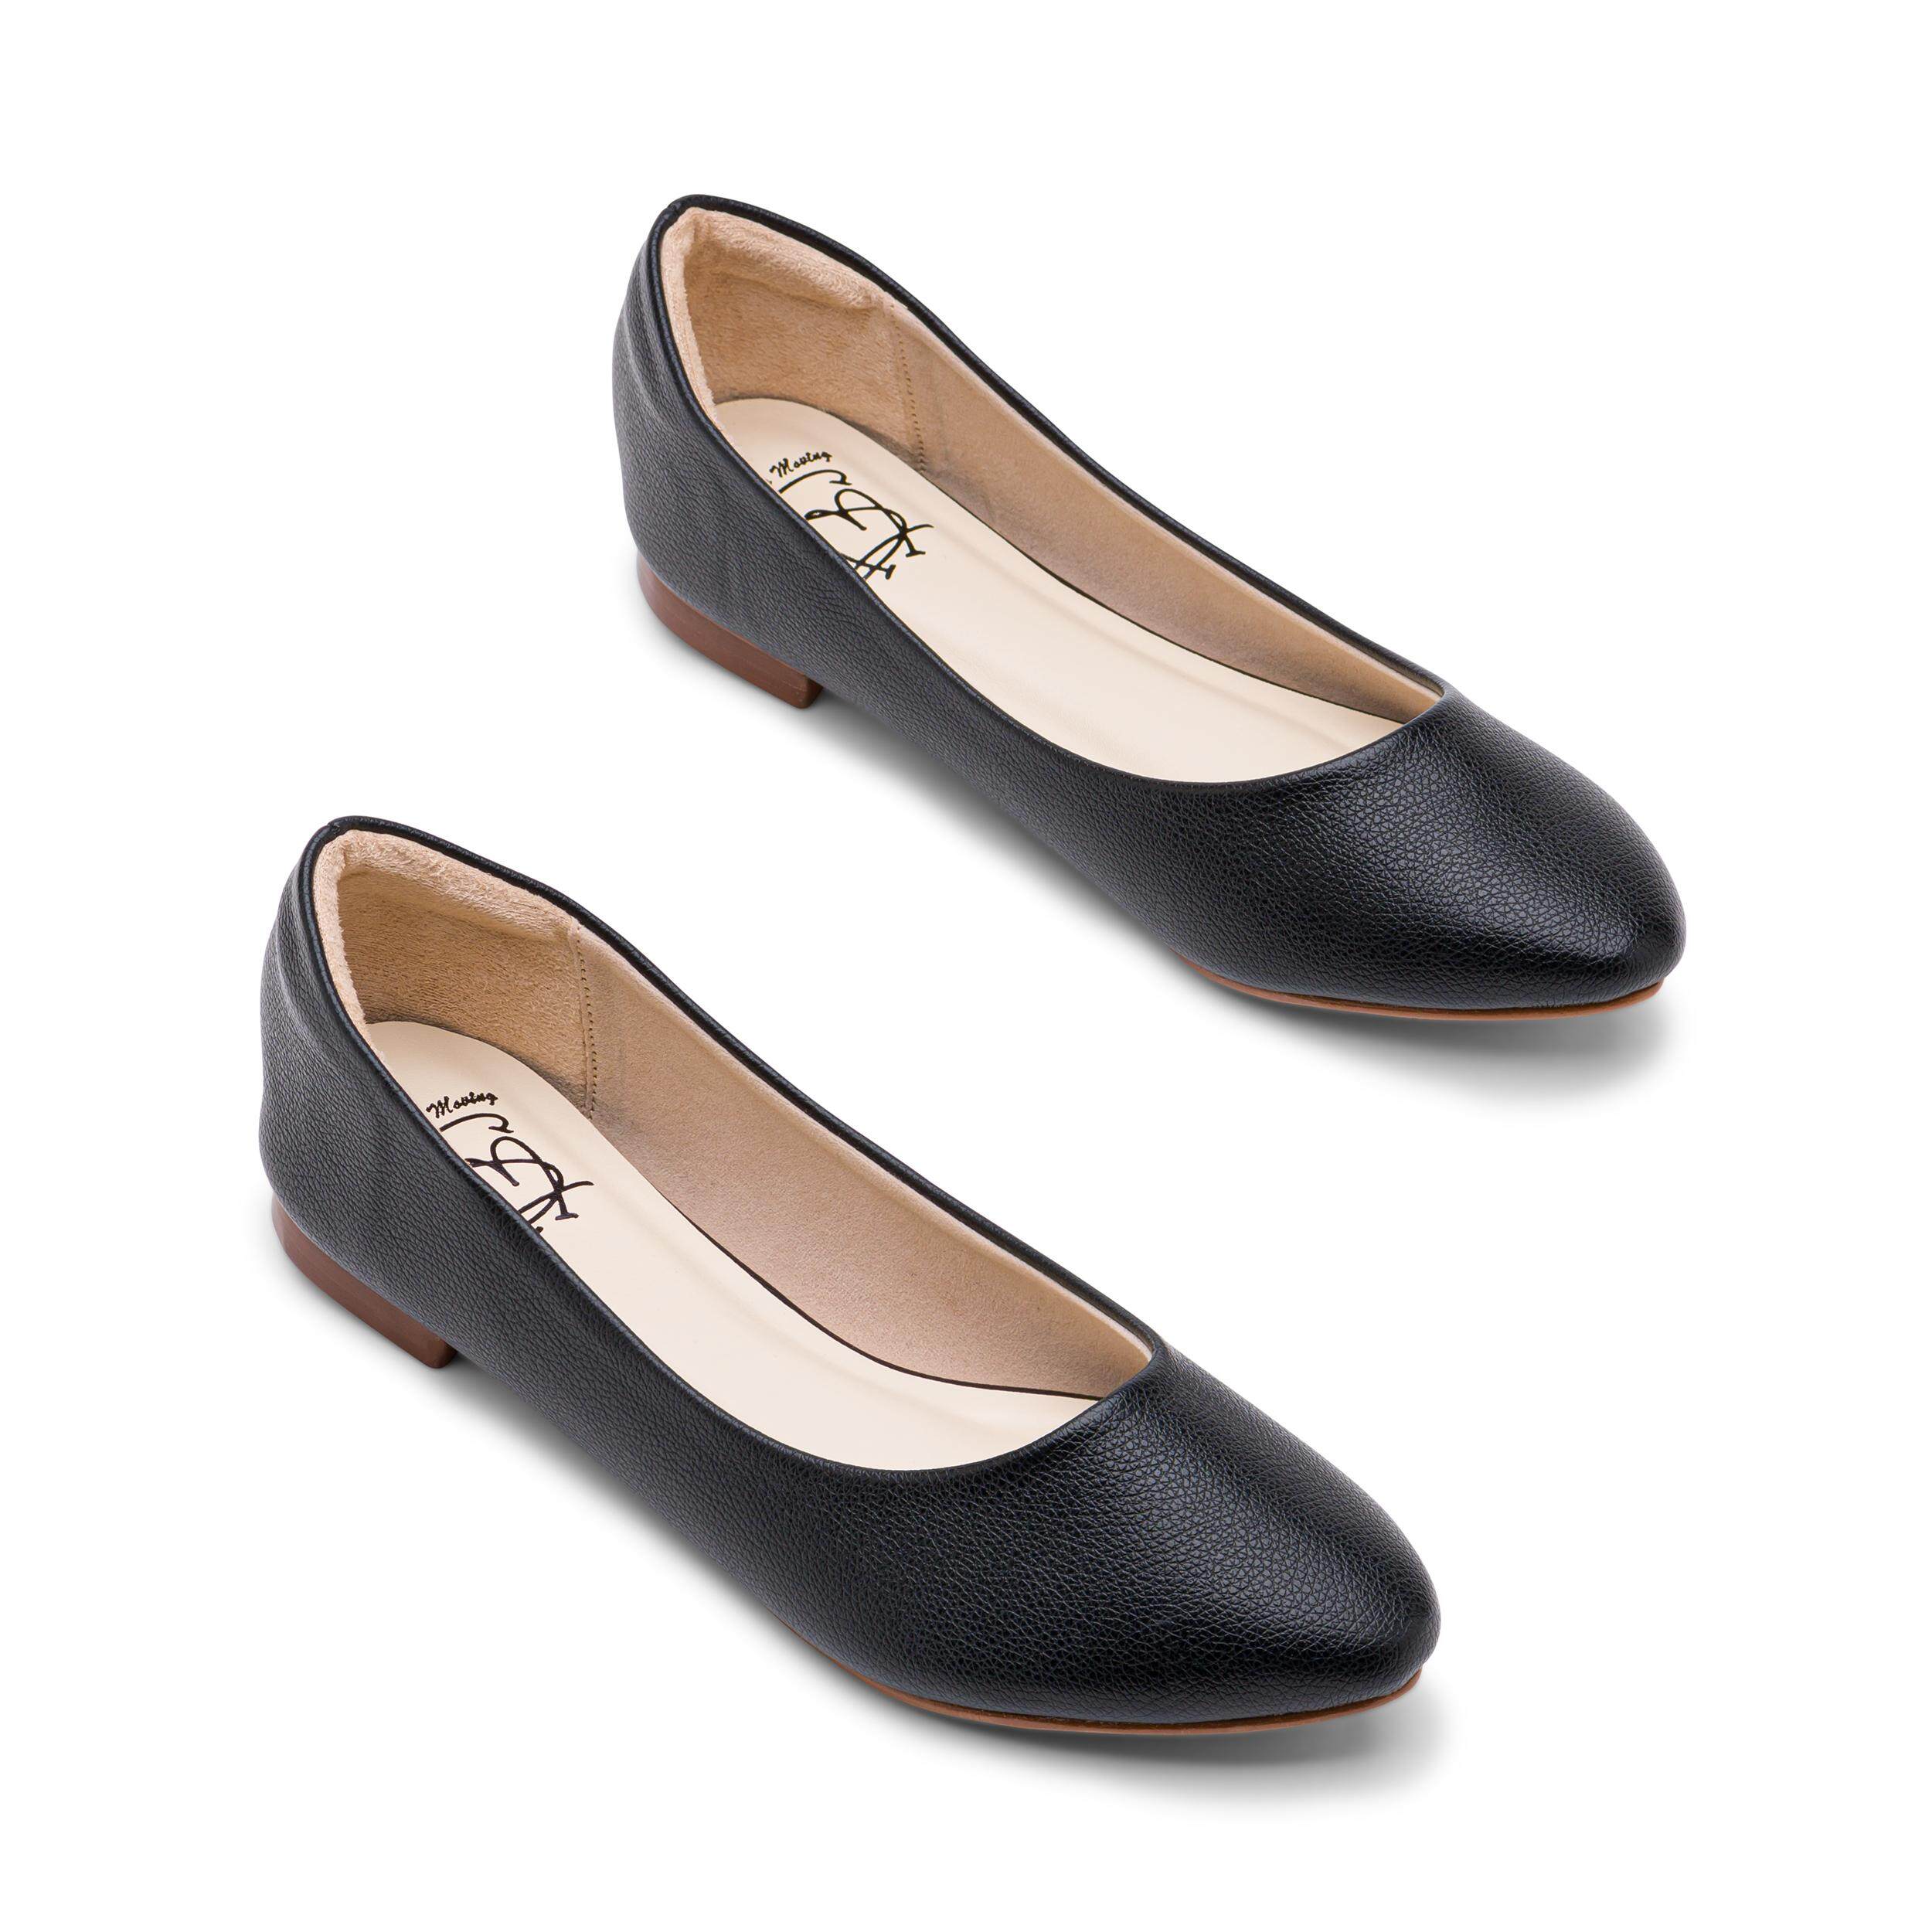 Ms.Choo Pointed Flats MONA : Black / รองเท้าส้นเตี้ยหัวแหลม / รองเท้าบัลเล่ต์ / รองเท้าคัทชู สีดำ